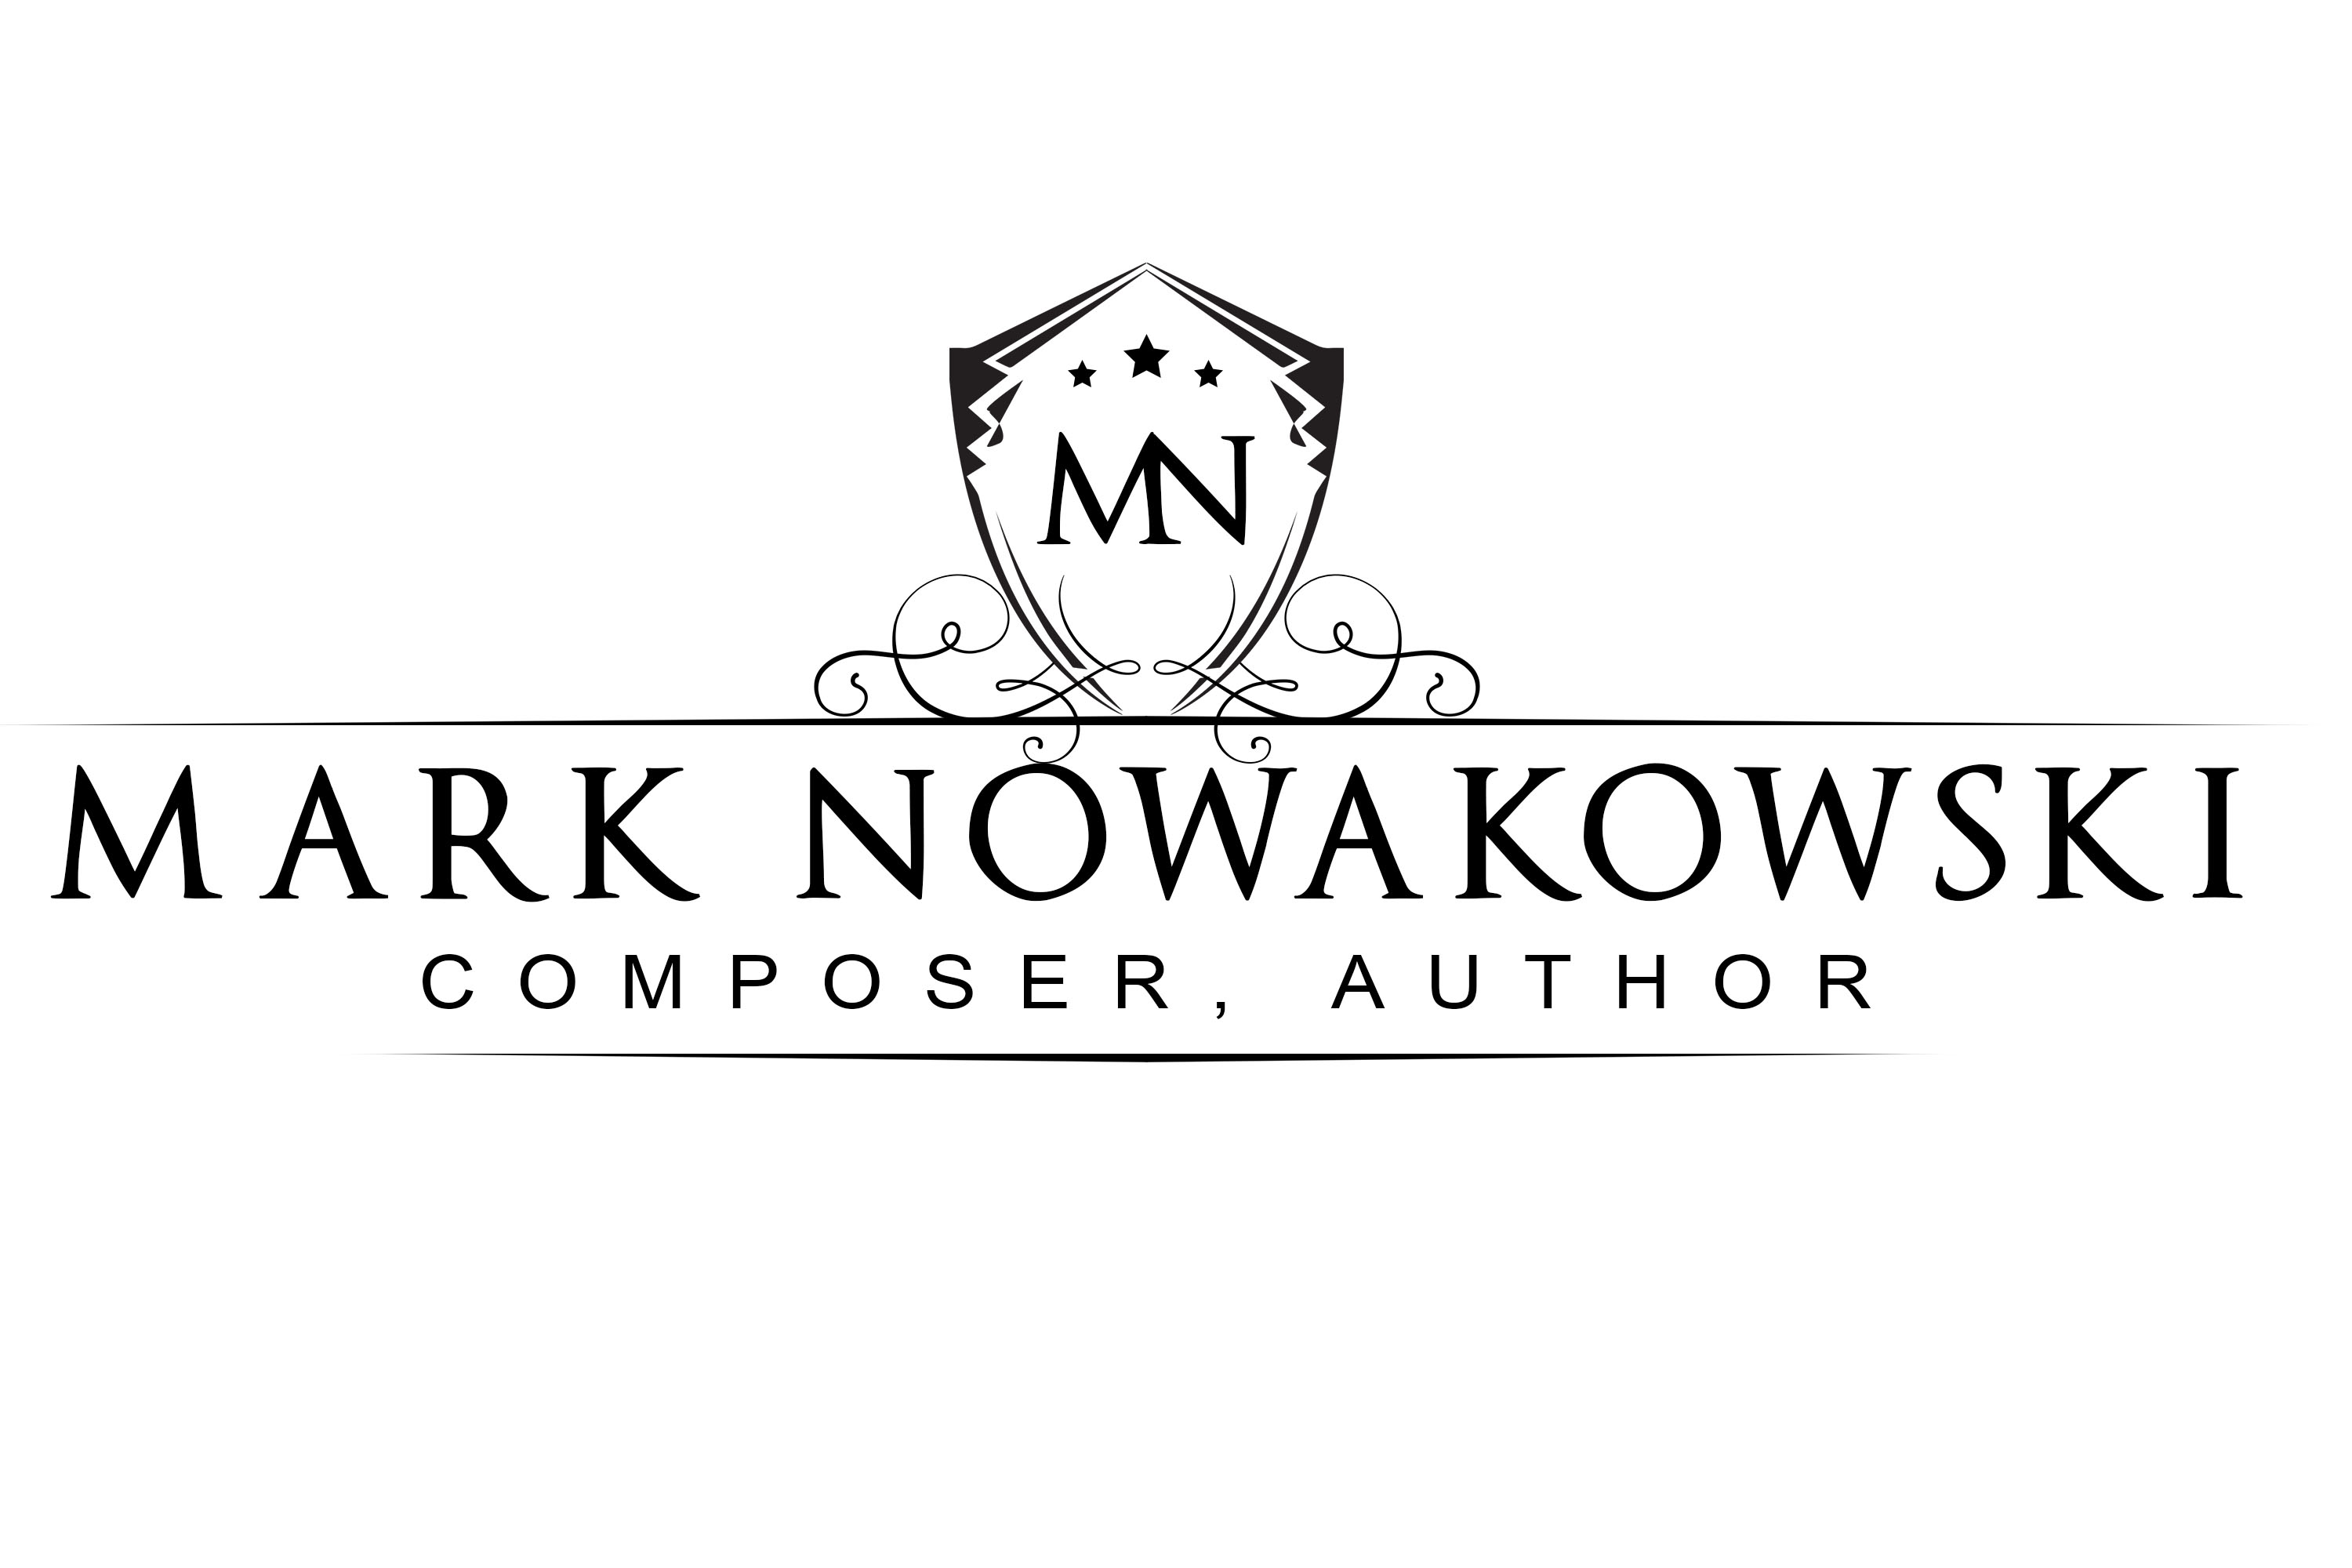 Mark Nowakowski